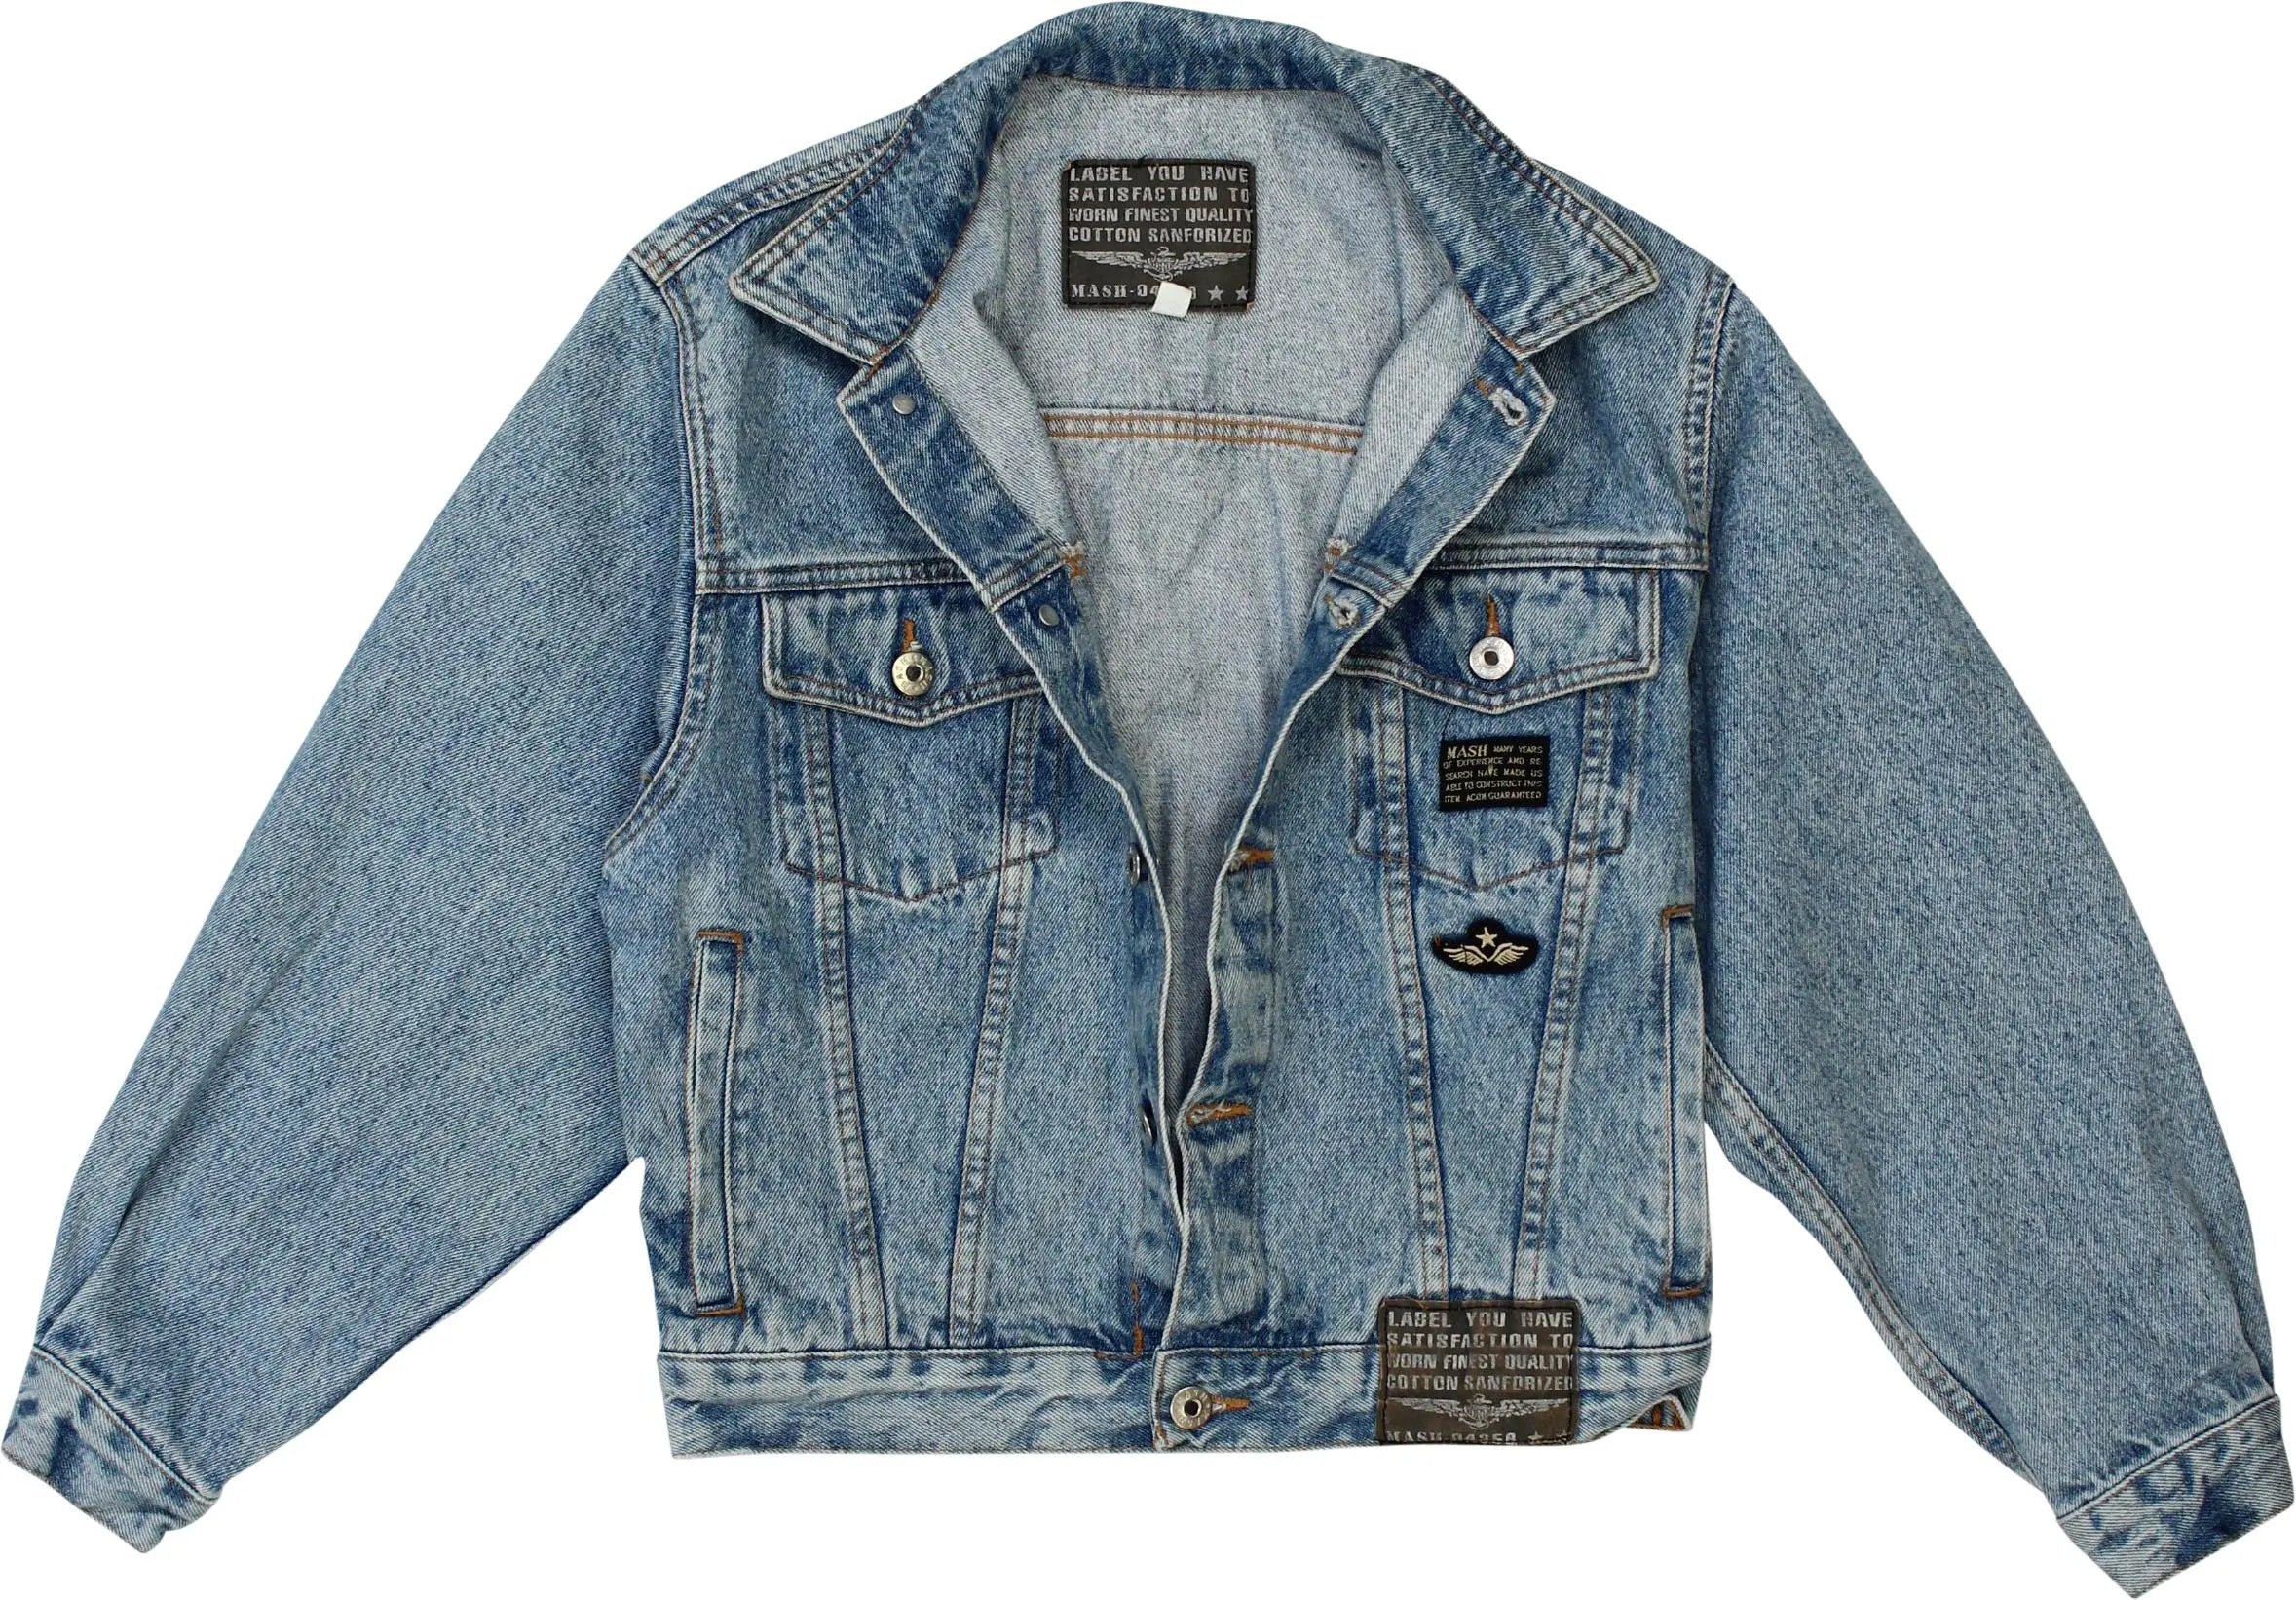 Mash - Blue Denim Jacket- ThriftTale.com - Vintage and second handclothing